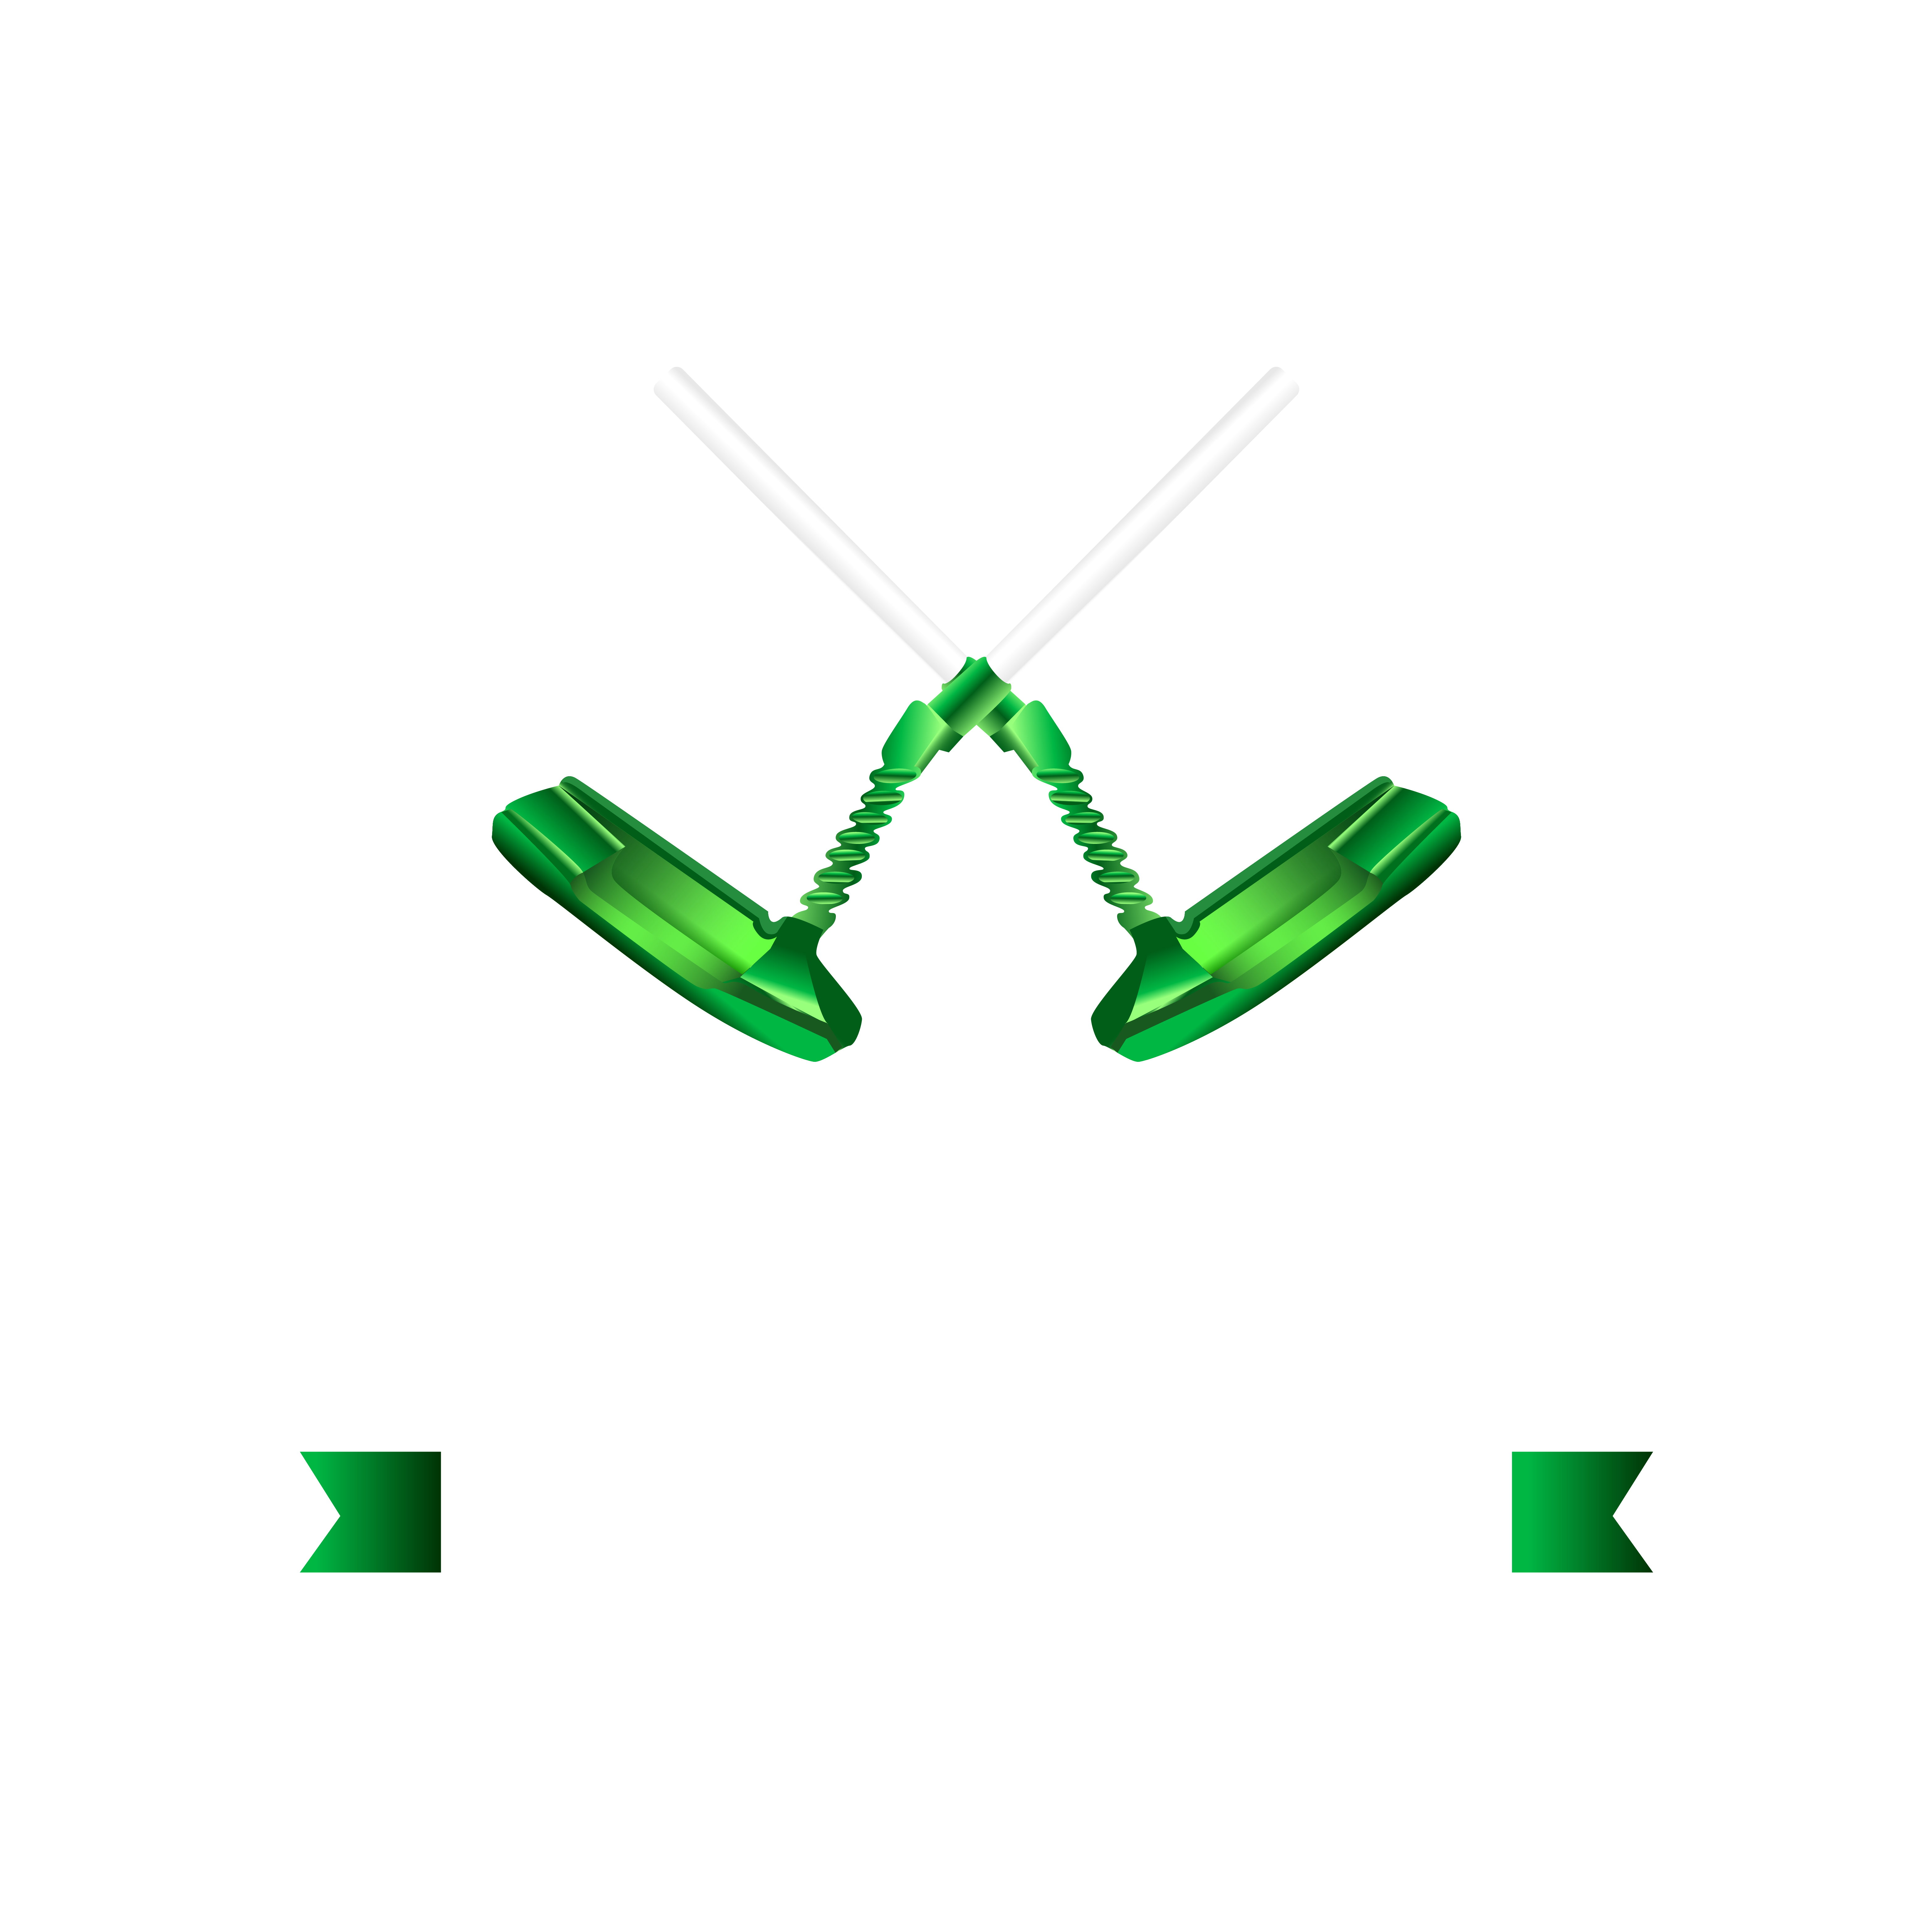 eastcoastcustomputters